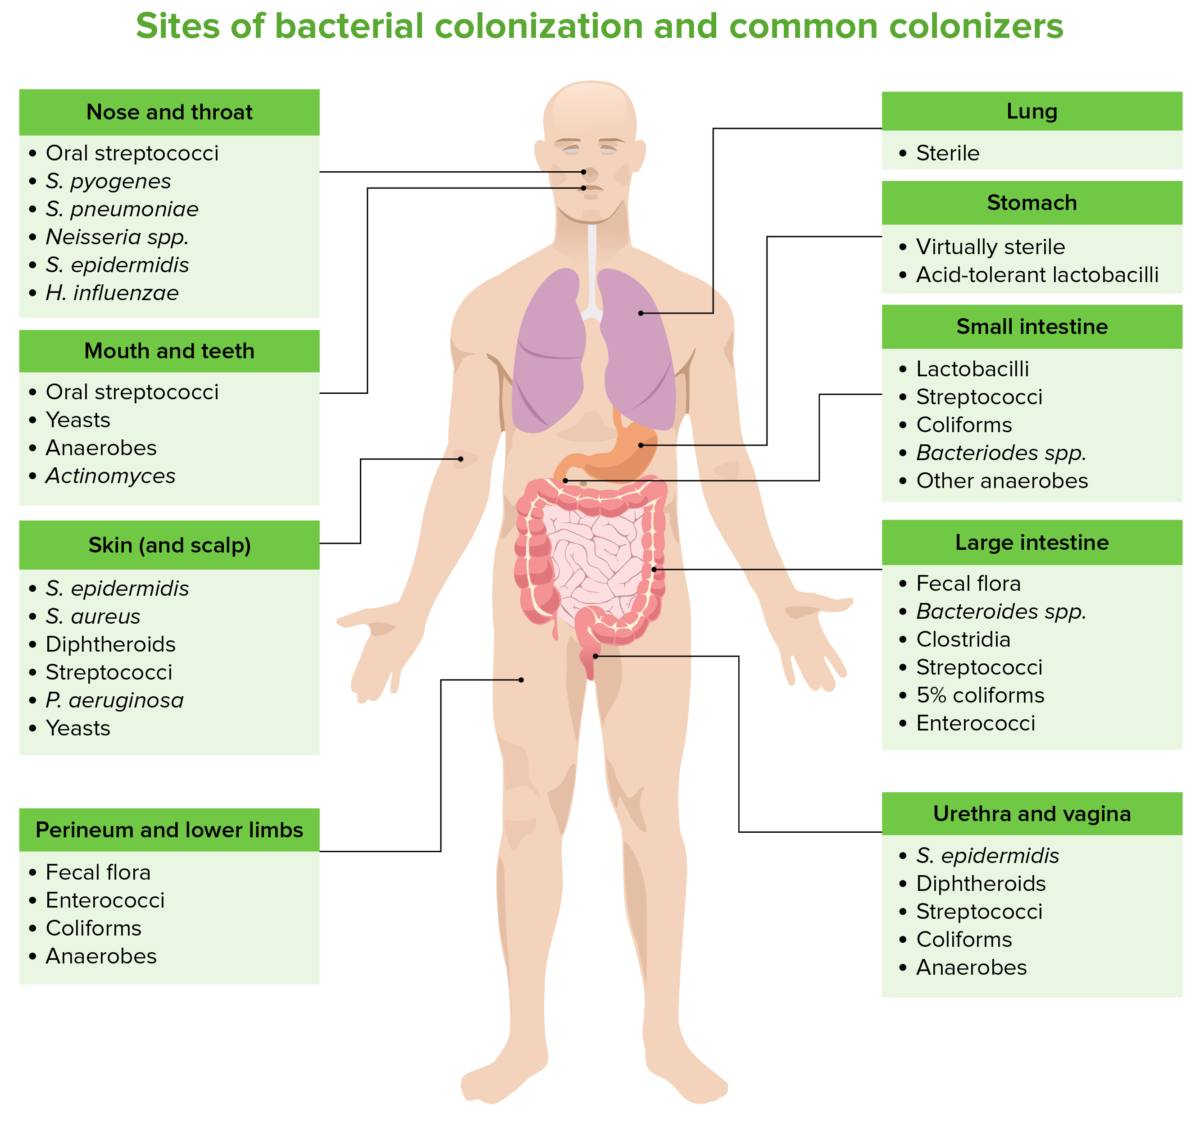 Lugares de colonización bacteriana